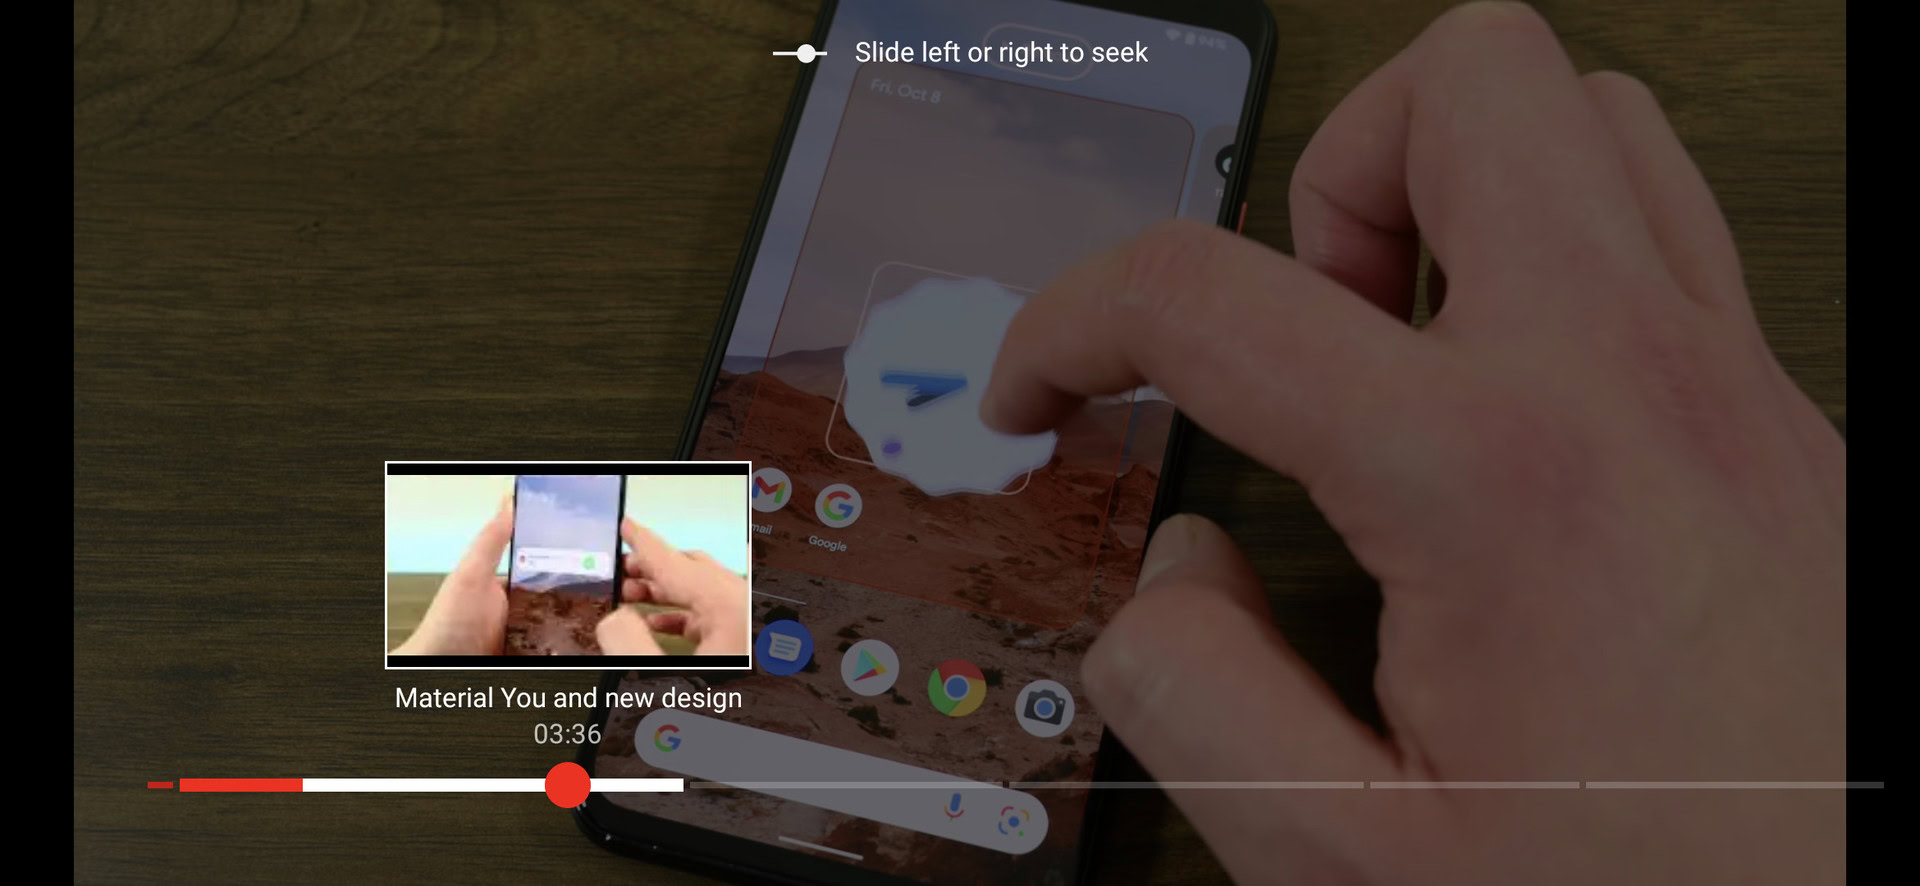 Slide to seek gesture in the youtube app